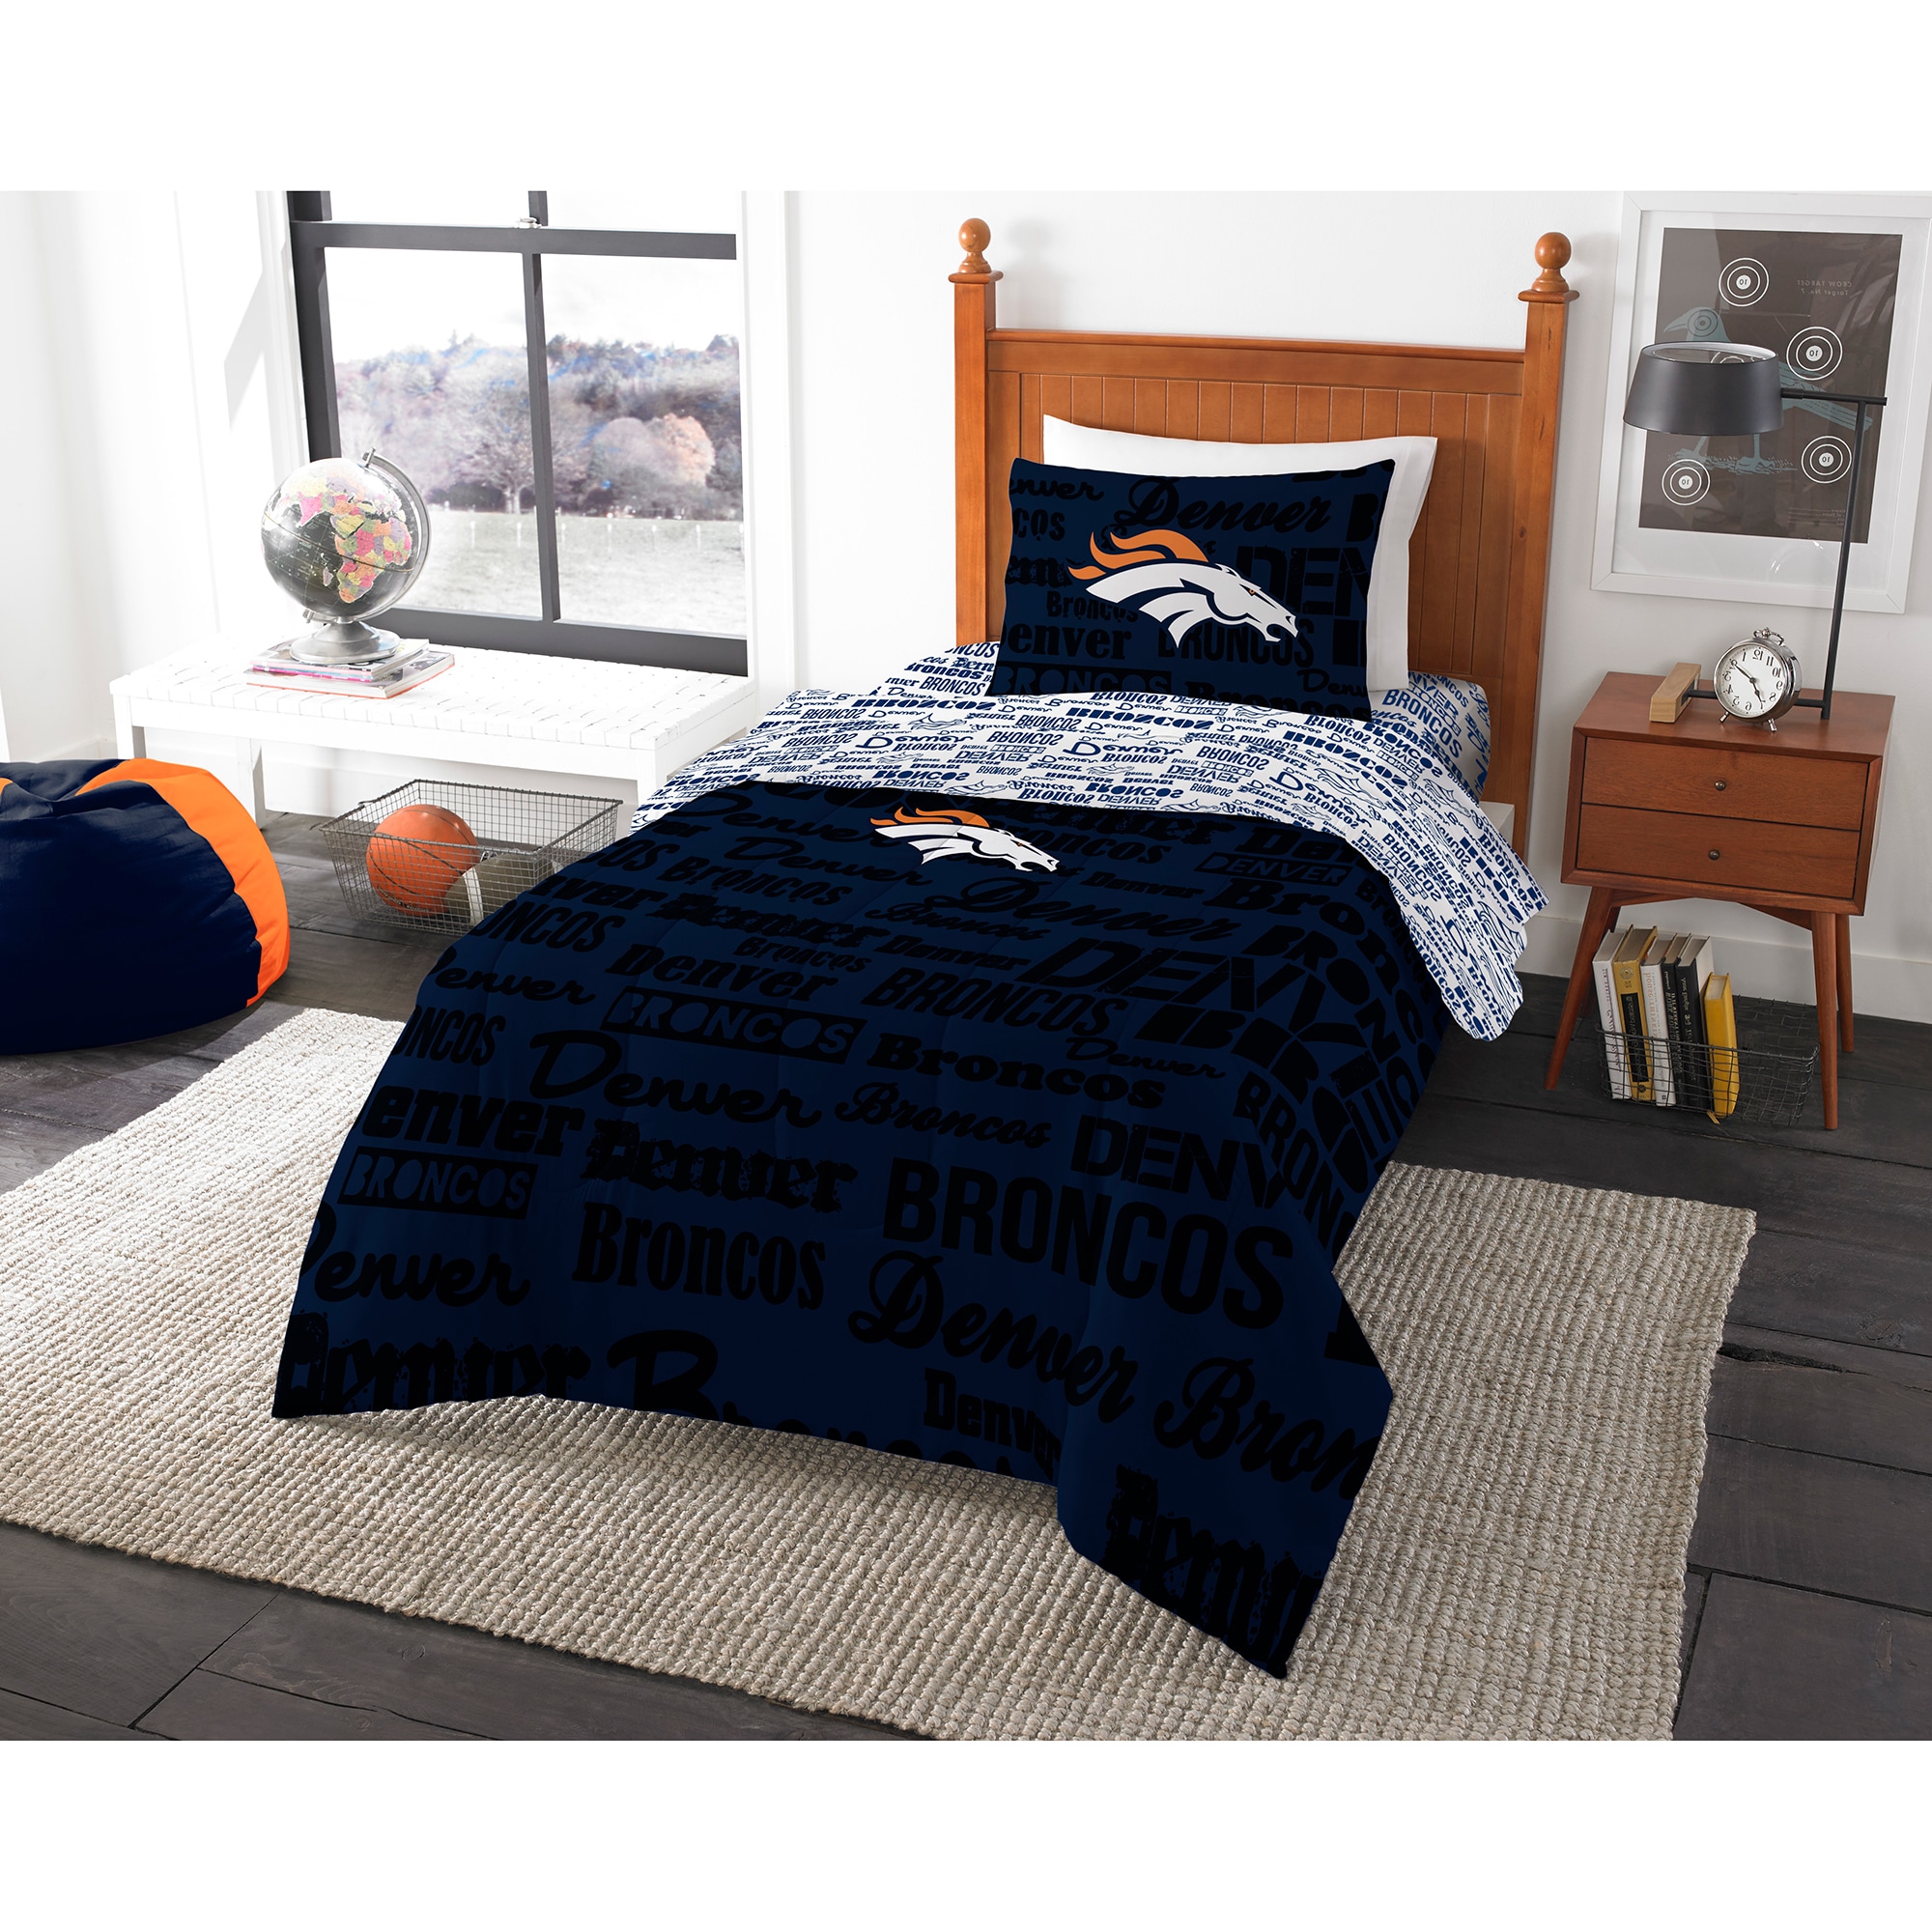 NFL Denver Broncos Bed in a Bag Complete Bedding Set - image 1 of 1